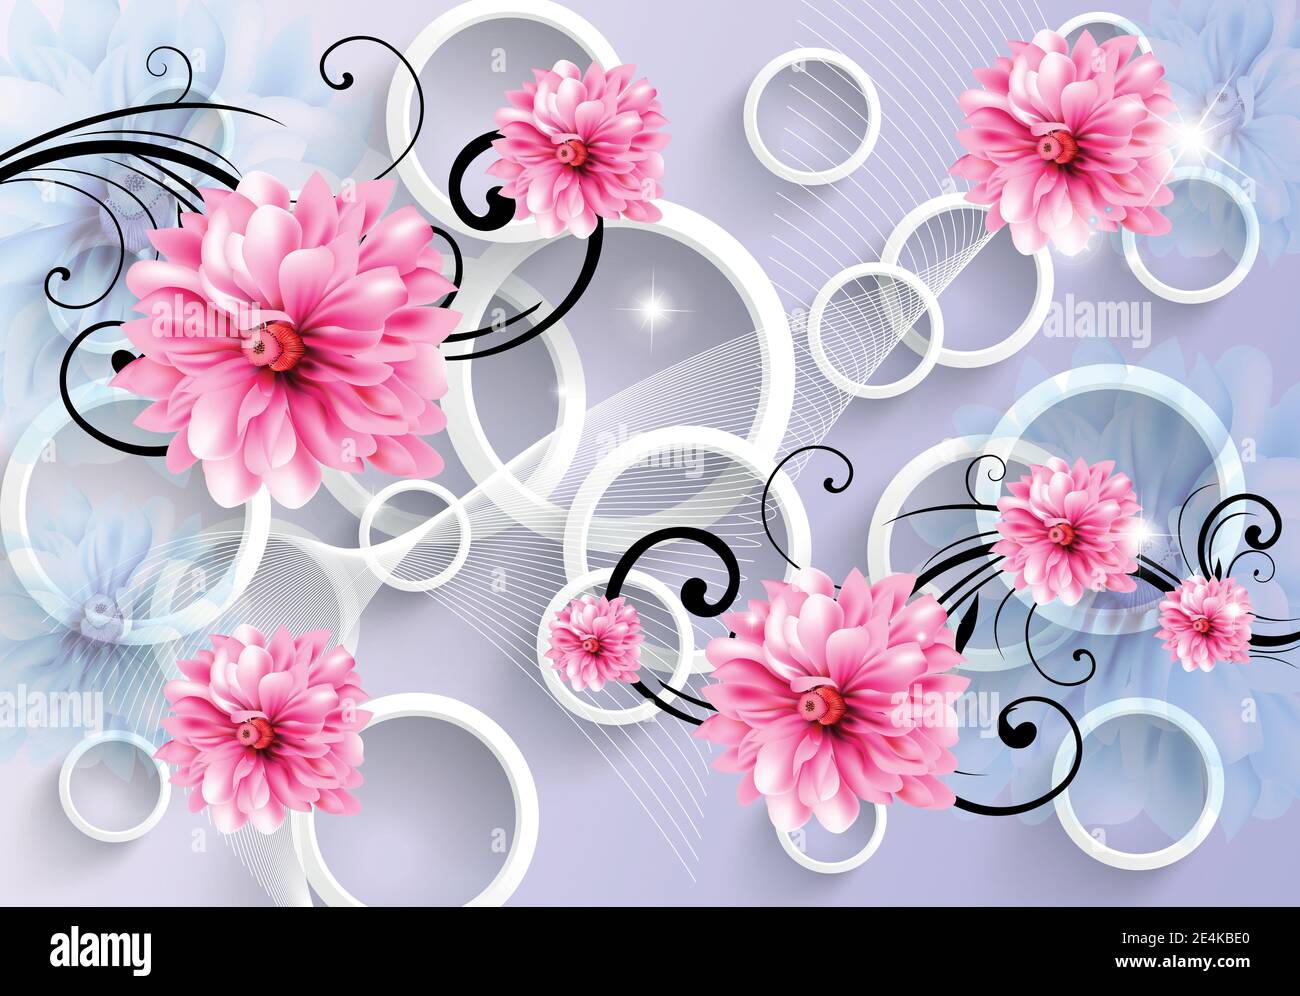 Không gian làm việc của bạn sẽ trở nên rực rỡ và tươi sáng hơn với Pink Flowers 3D Background. Tận hưởng những giây phút thư giãn cùng những cánh hoa 3D tuyệt đẹp và màu sắc nhẹ nhàng, giúp bạn lấy lại năng lượng và tinh thần cho một ngày mới đầy sức sống.